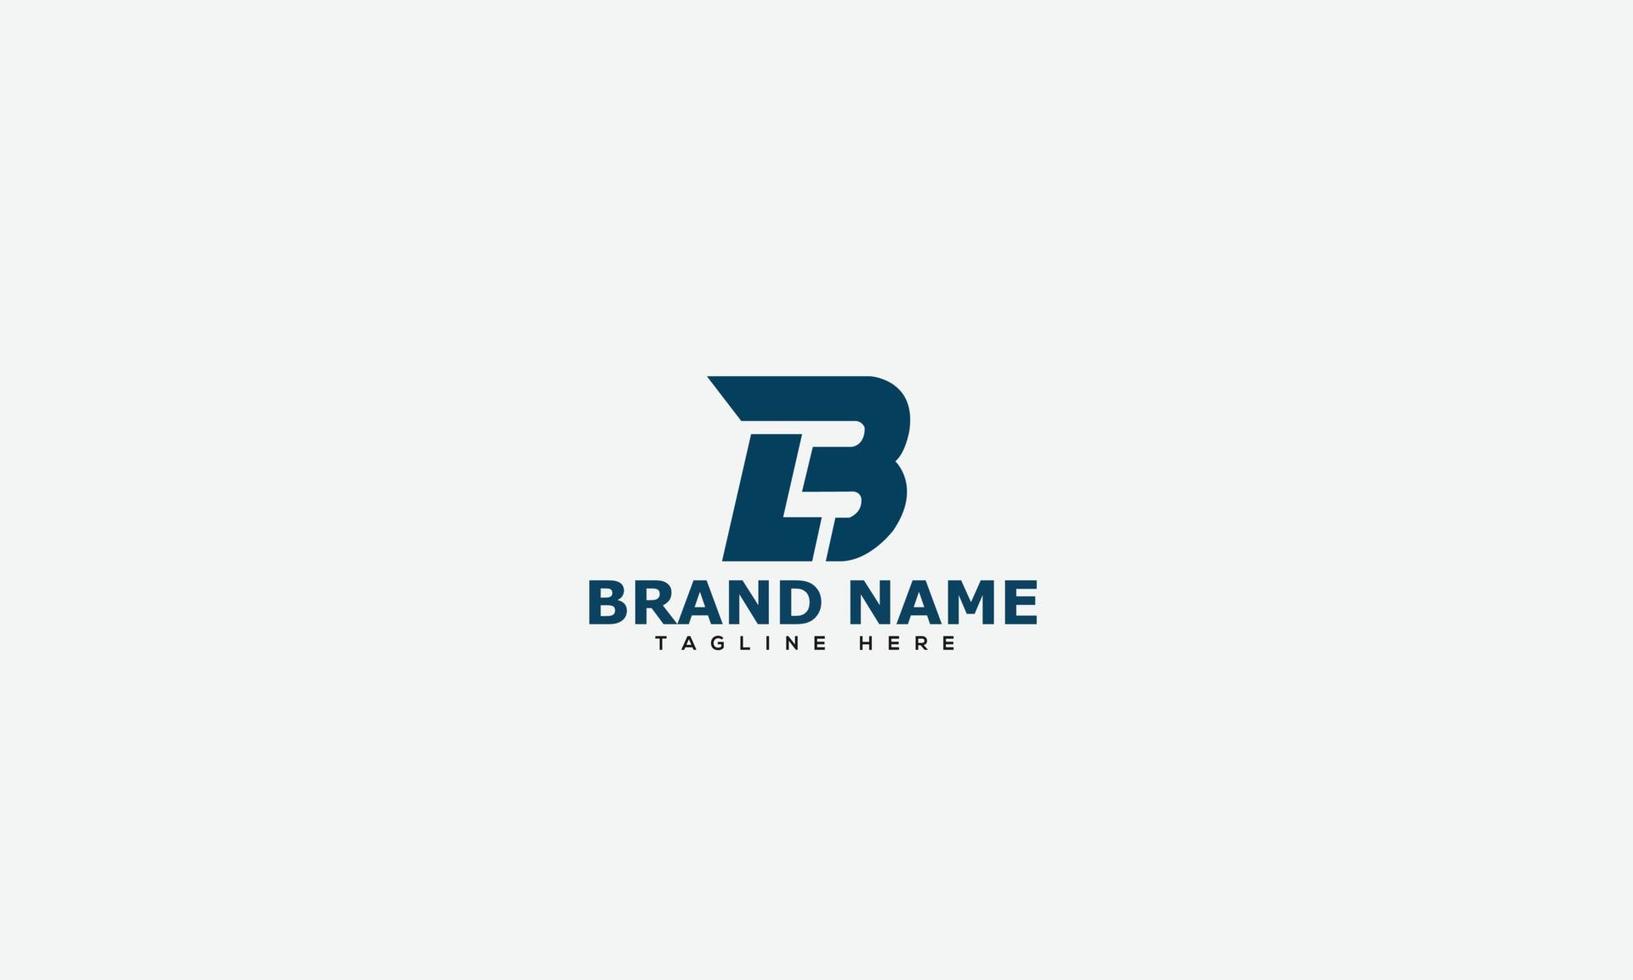 elemento de branding gráfico de vetor de modelo de design de logotipo bl.